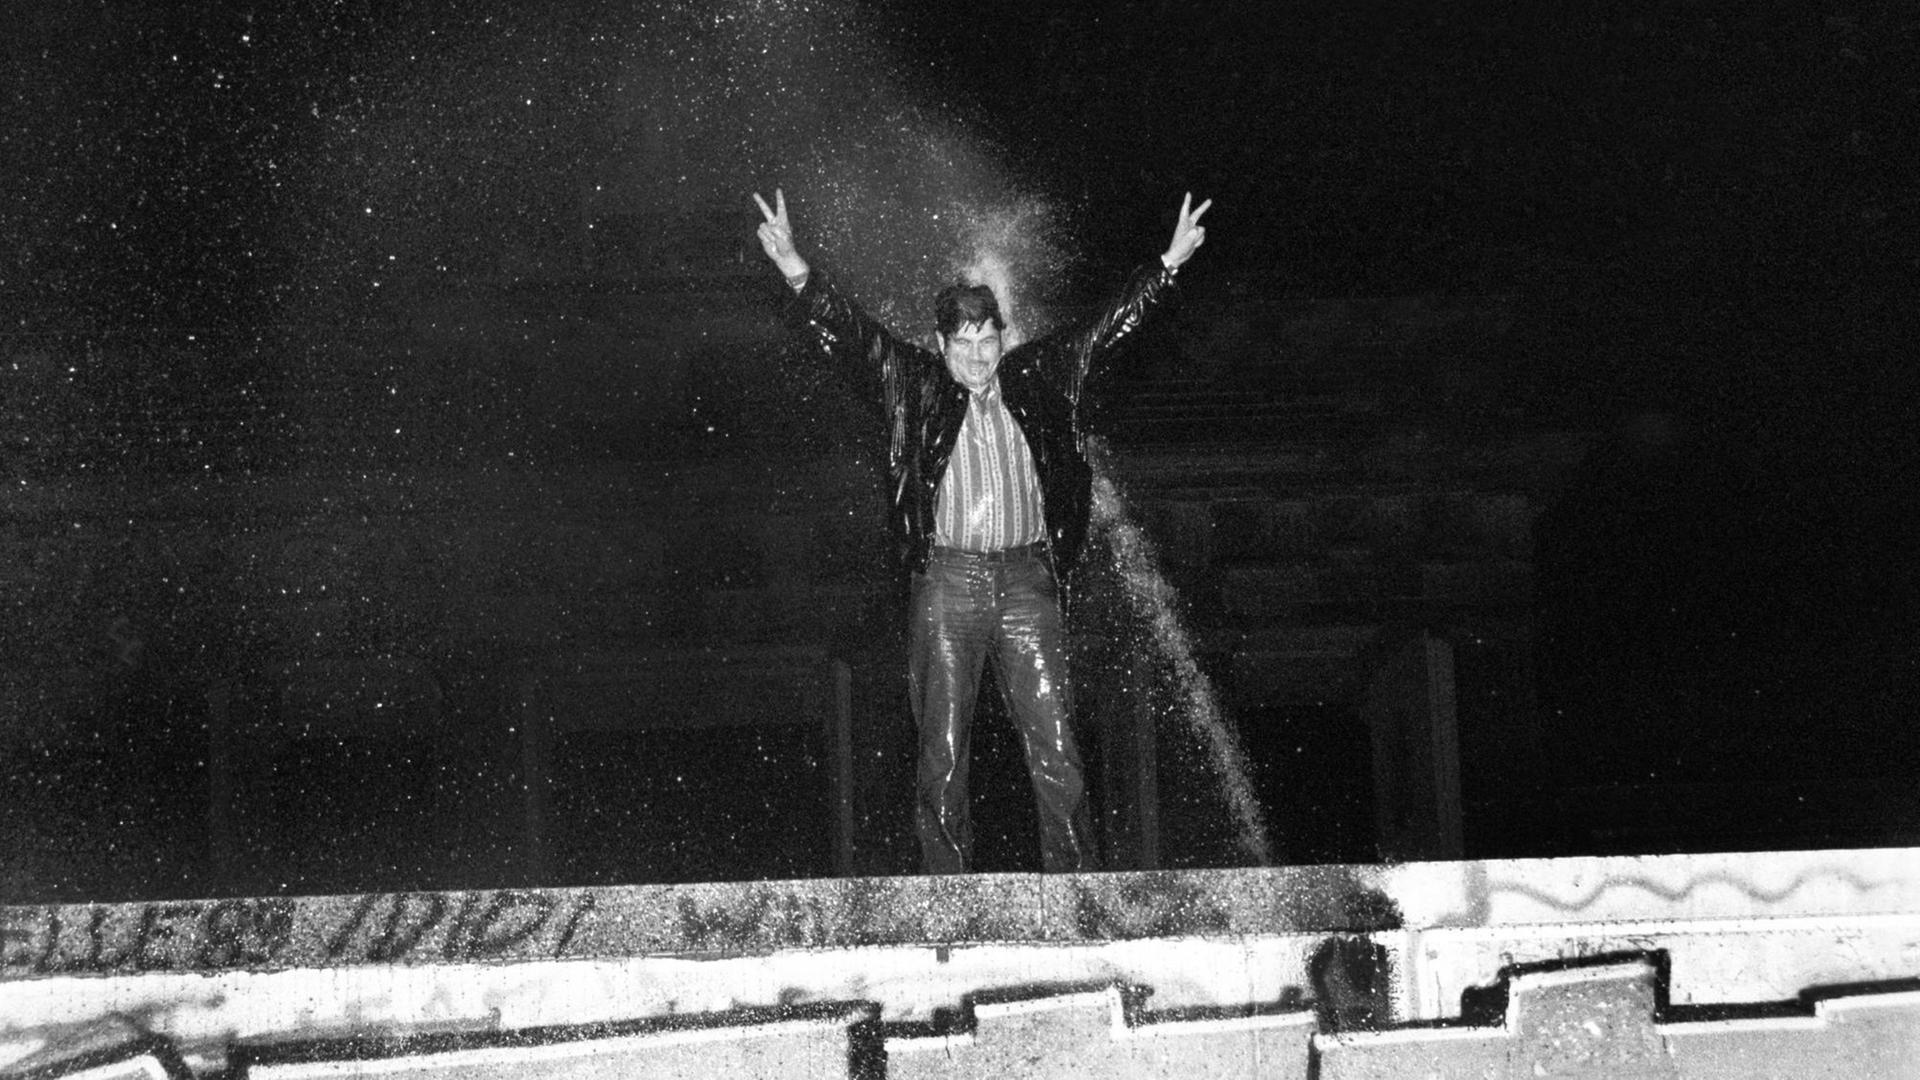 Ein durchnässter Mann steht auf der Berliner Mauer, reckt die Arme in die Höhe und wird dabei vom Strahl eines Wasserwerfers getroffen.